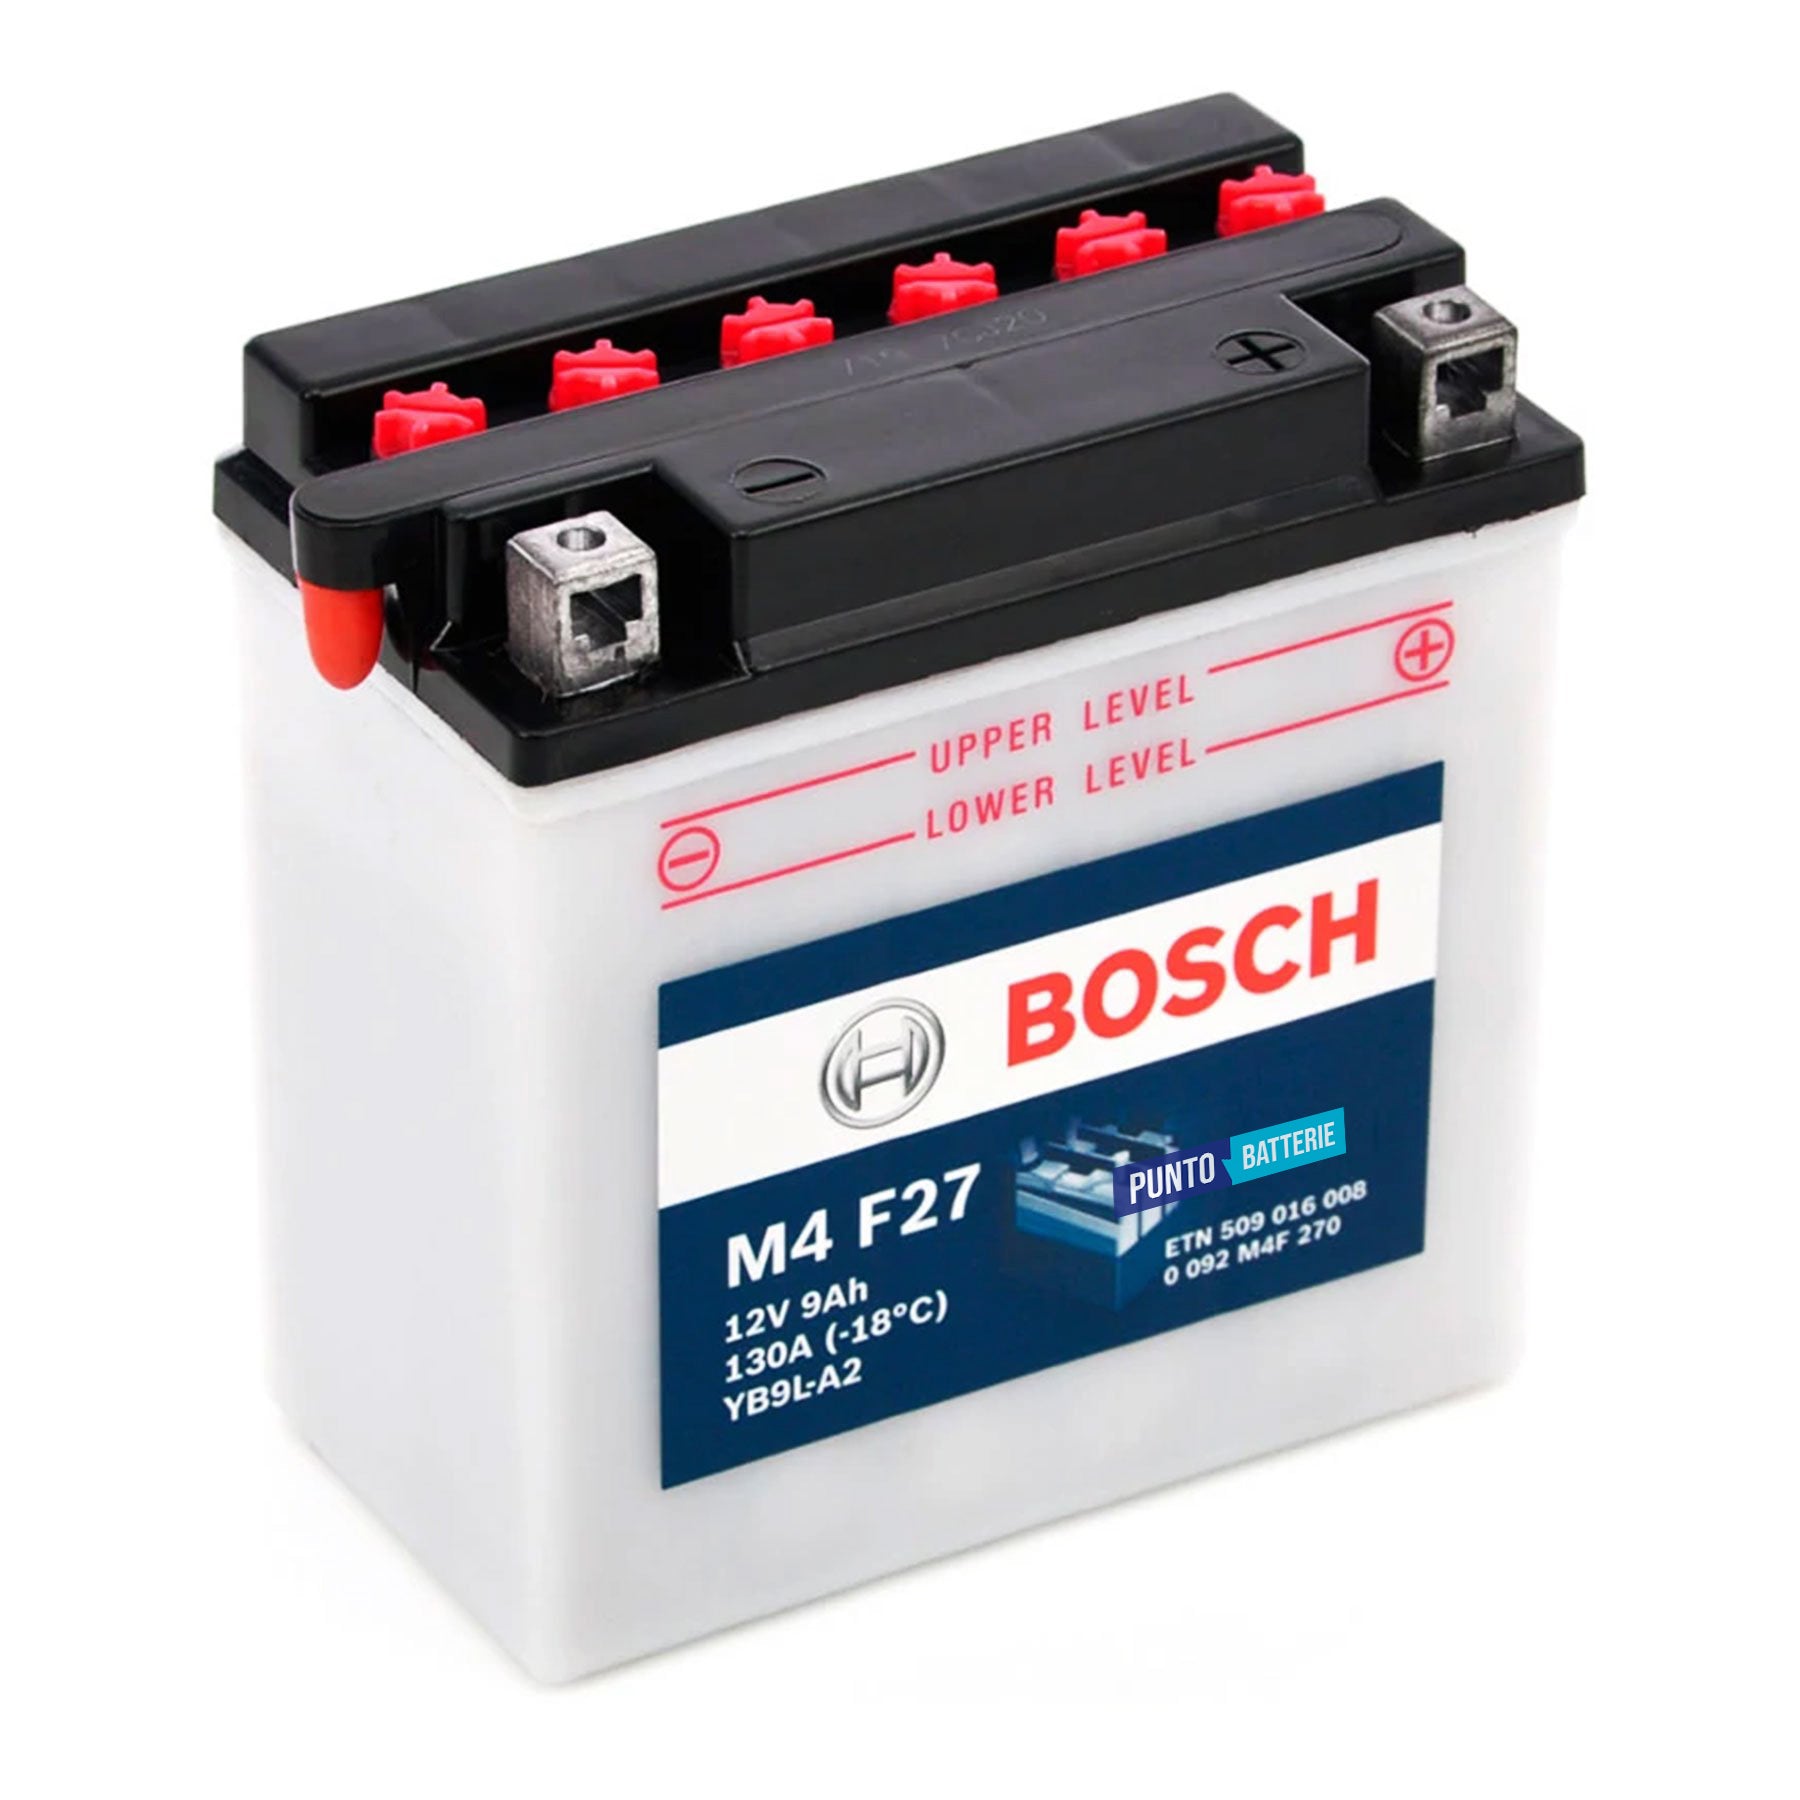 Batteria originale Bosch M4 M4F27, dimensioni 135 x 75 x 139, polo positivo a destra, 12 volt, 9 amperora, 130 ampere. Batteria per moto, scooter e powersport.